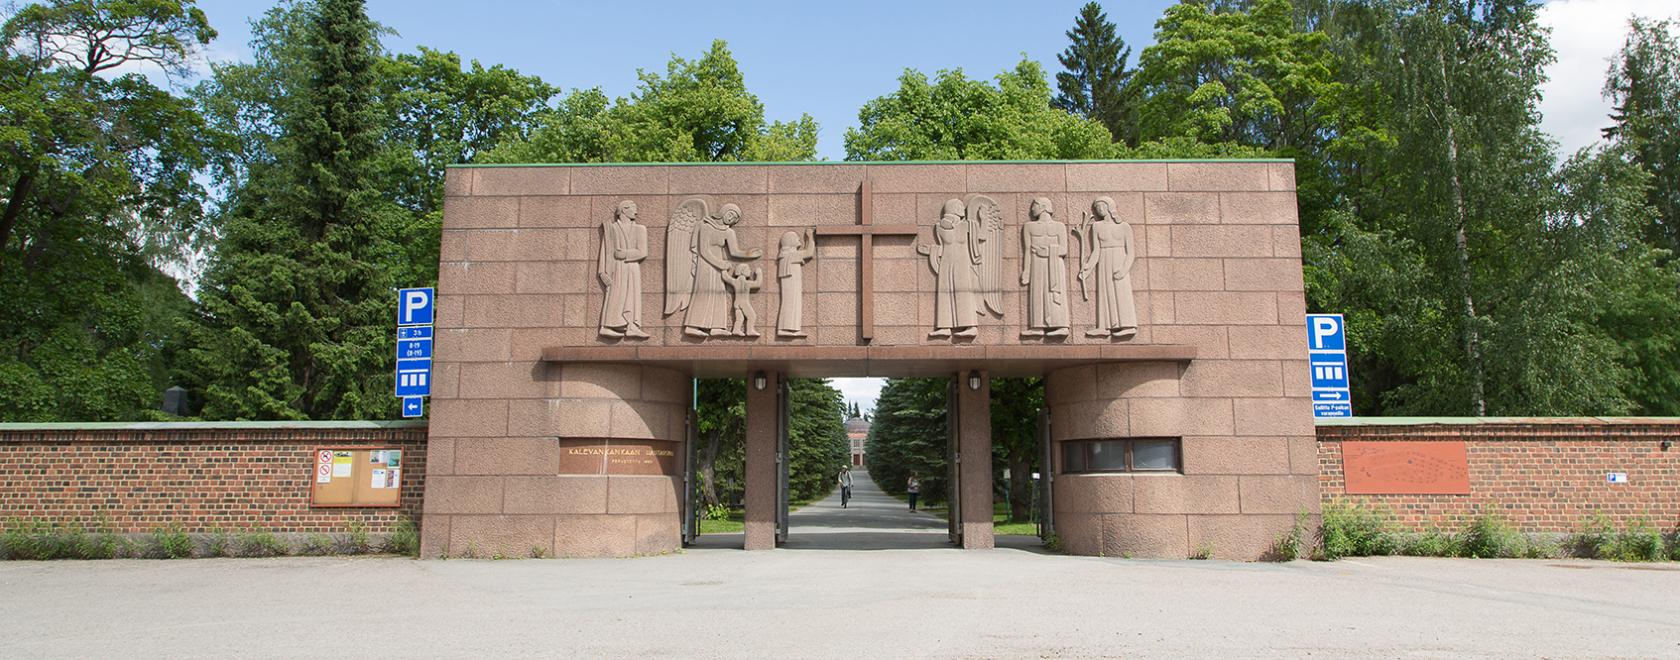 Kalevankankaan hautausmaa Tampereella on kaupungin suurin viheralue ja suosittu vierailukohde. 